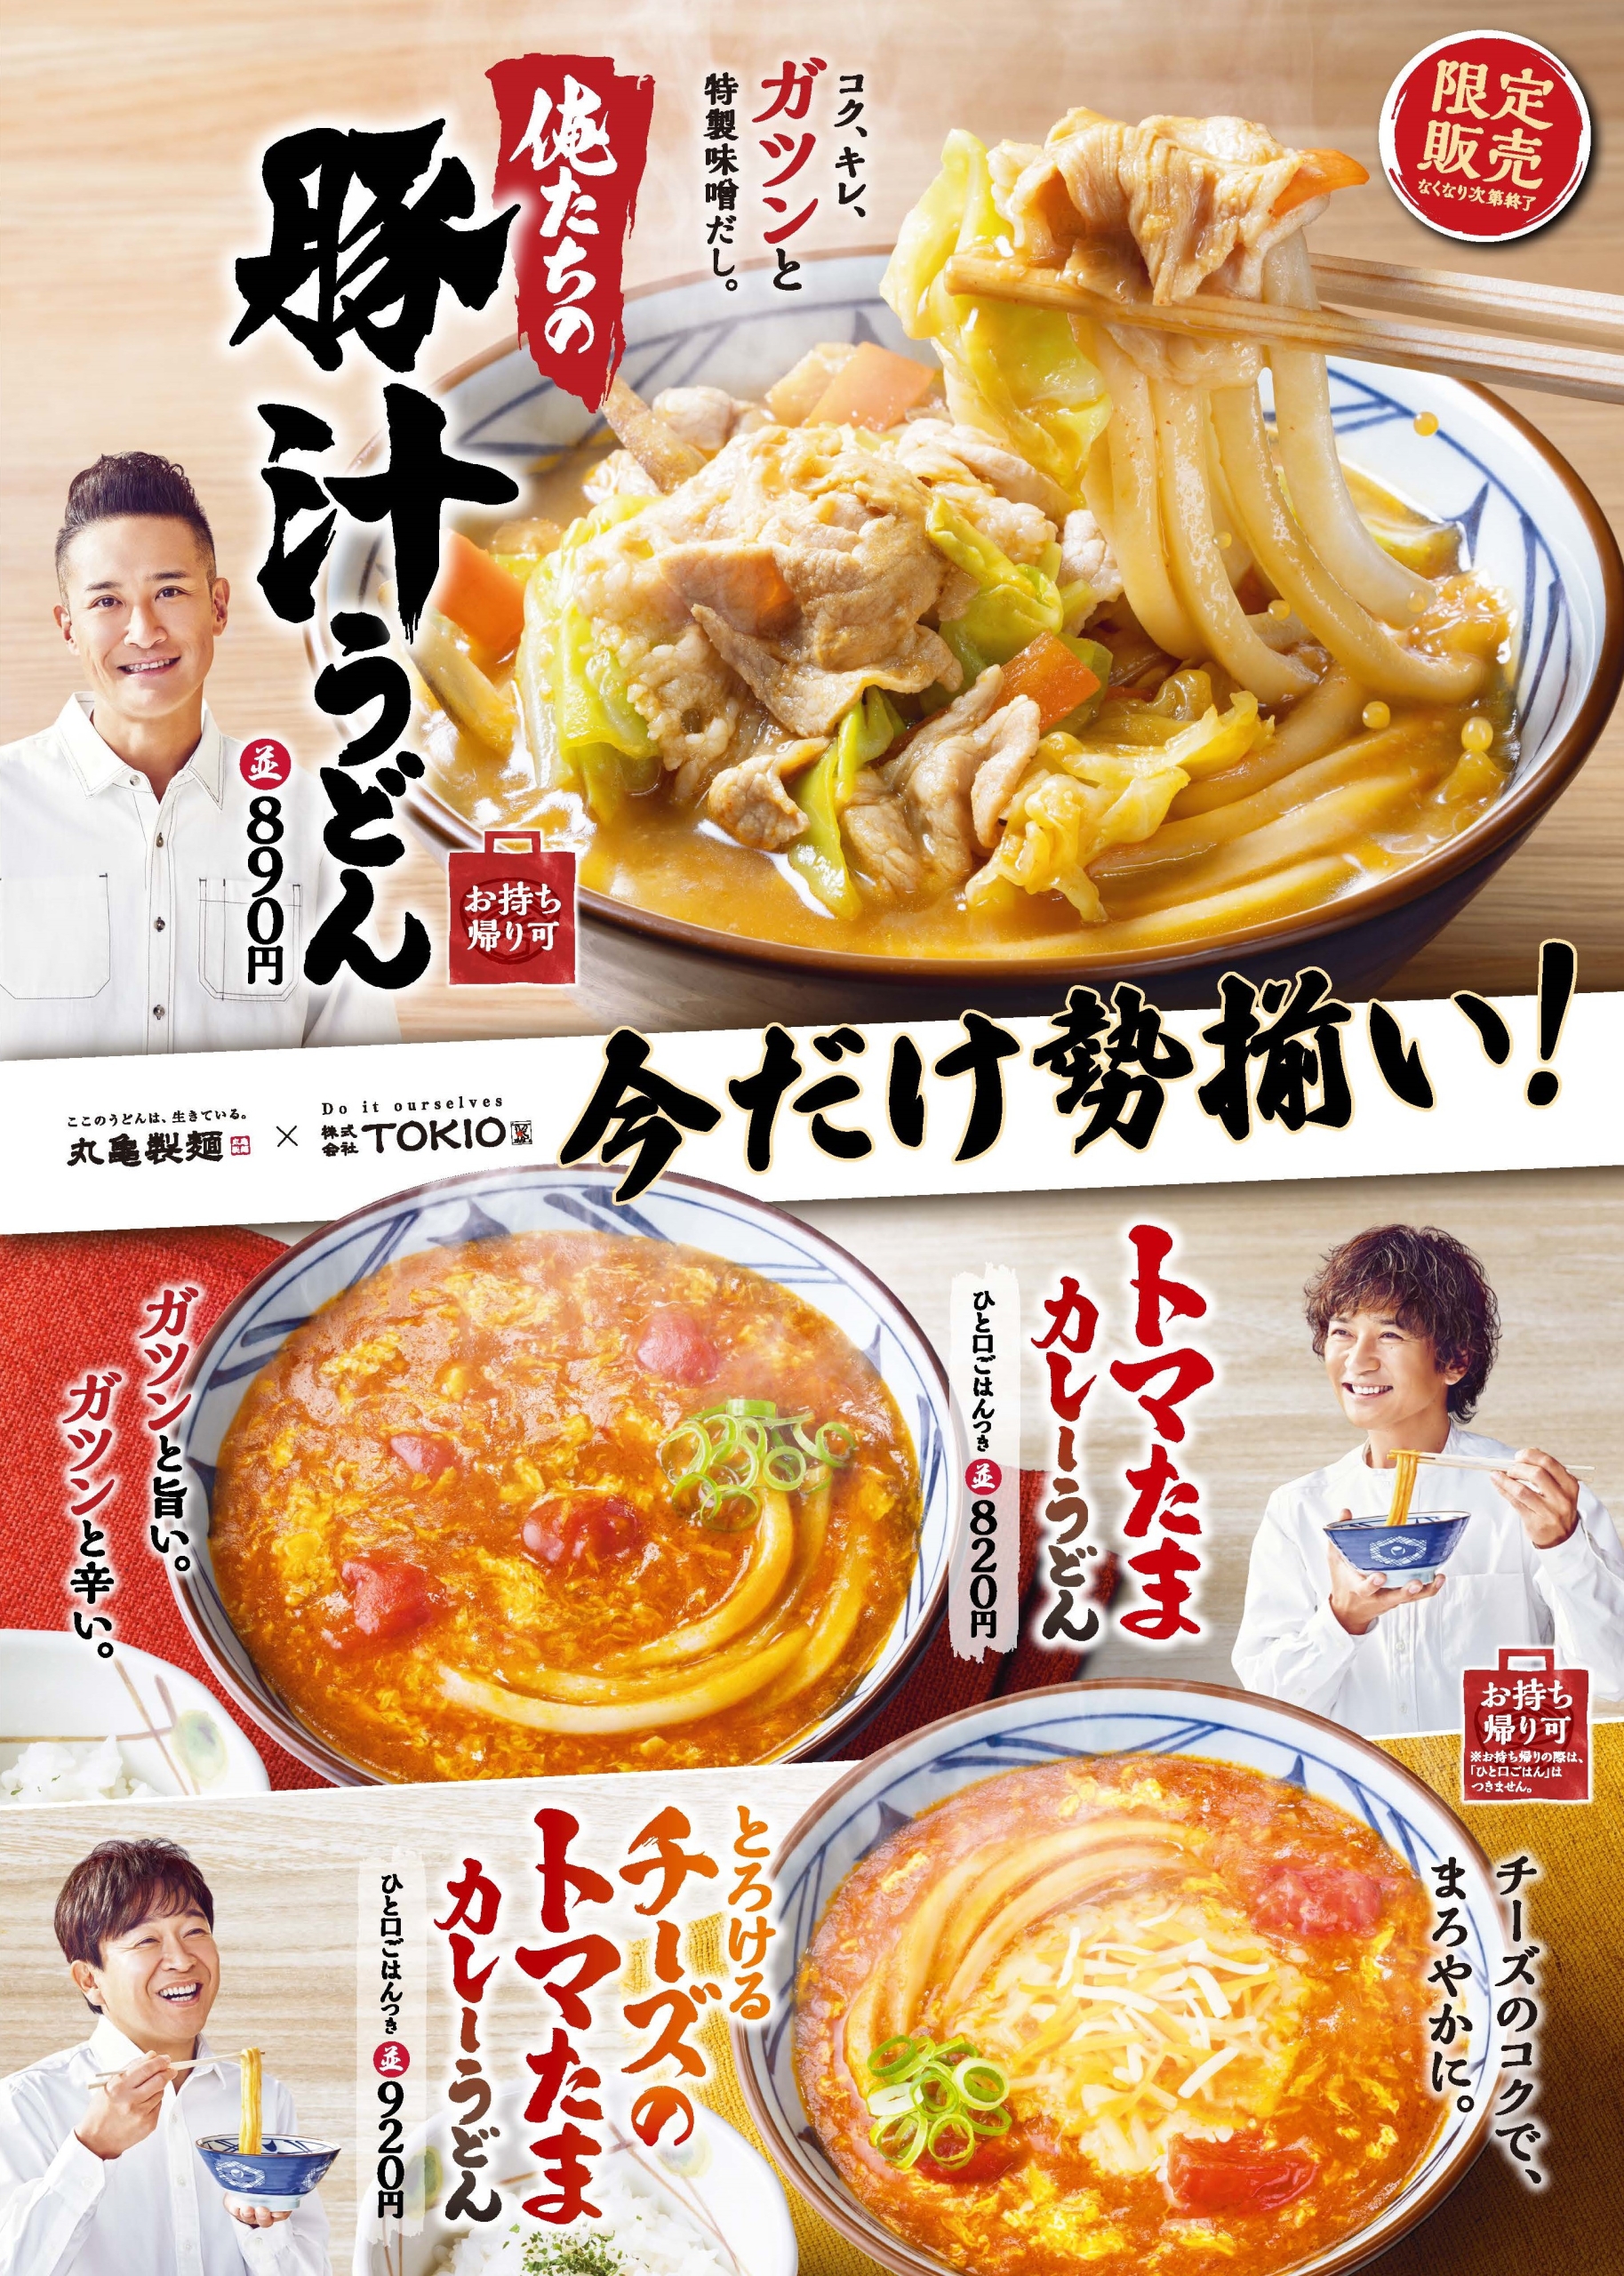 丸亀製麺×TOKIO「トマたまカレーうどん」「俺たちの豚汁うどん」など復活発売